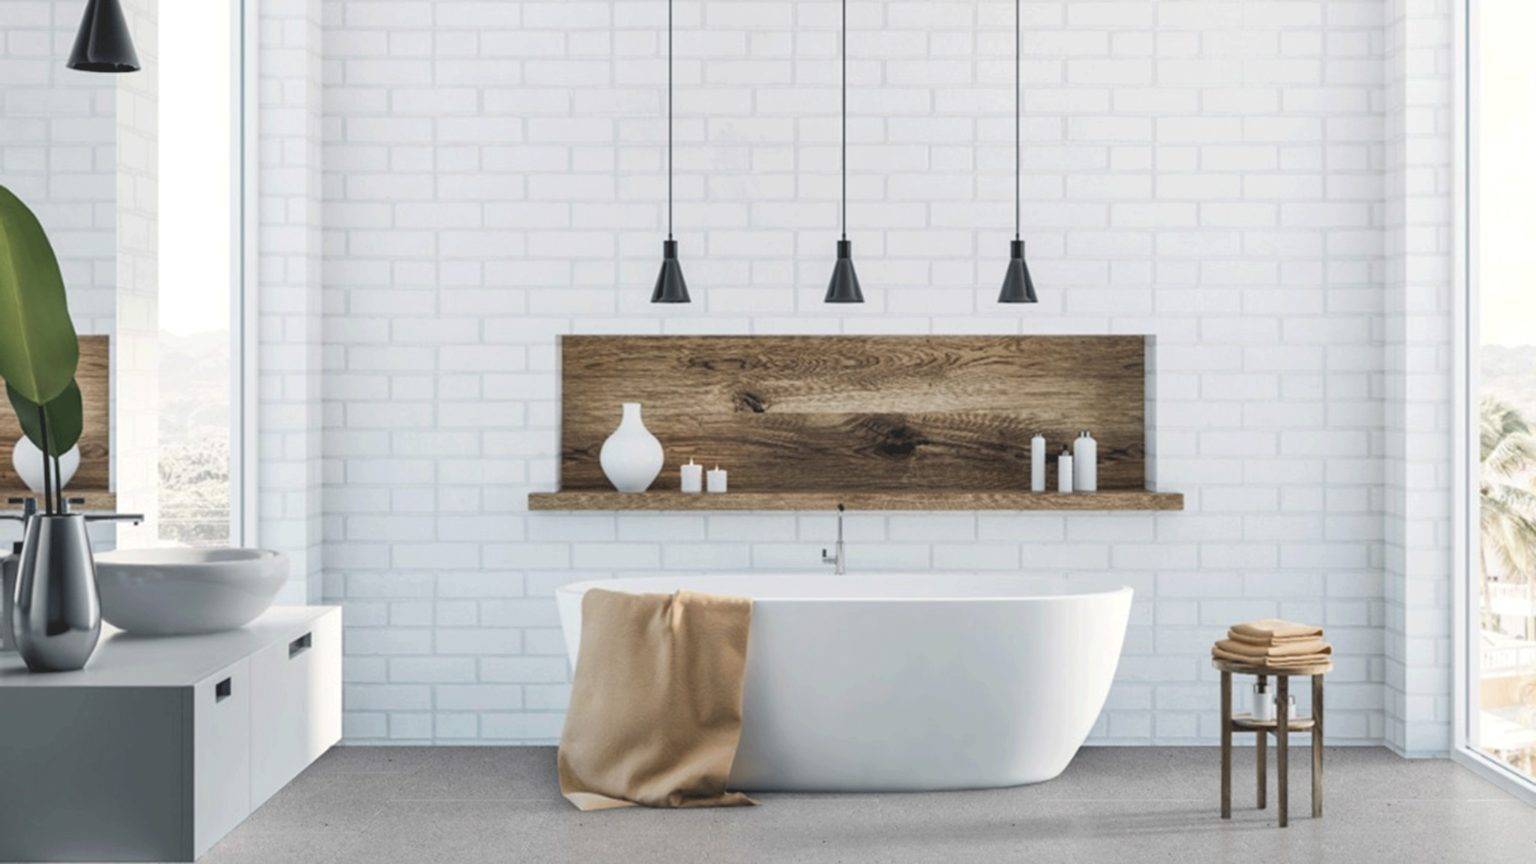 hình ảnh phòng tắm với tường gạch màu trắng, bồn tắm nằm, đèn thả màu đen, kệ gỗ để đồ